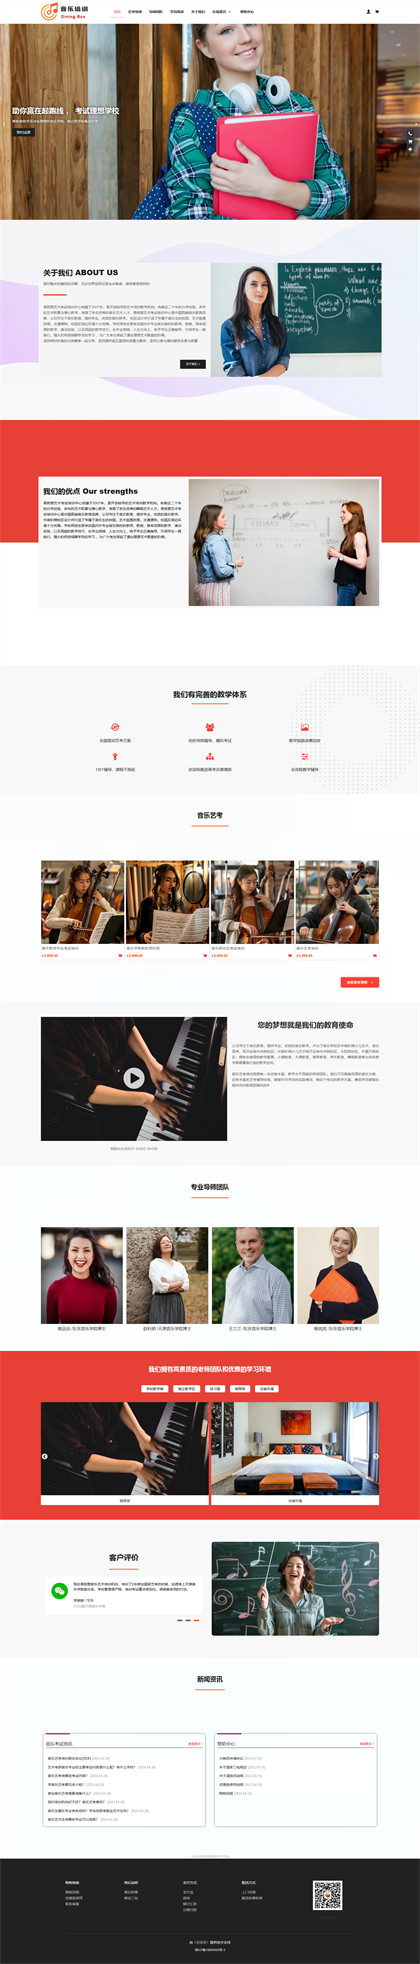 音乐培训班-艺考培训-音乐艺术培训机构-商城网站模板网站模板图片